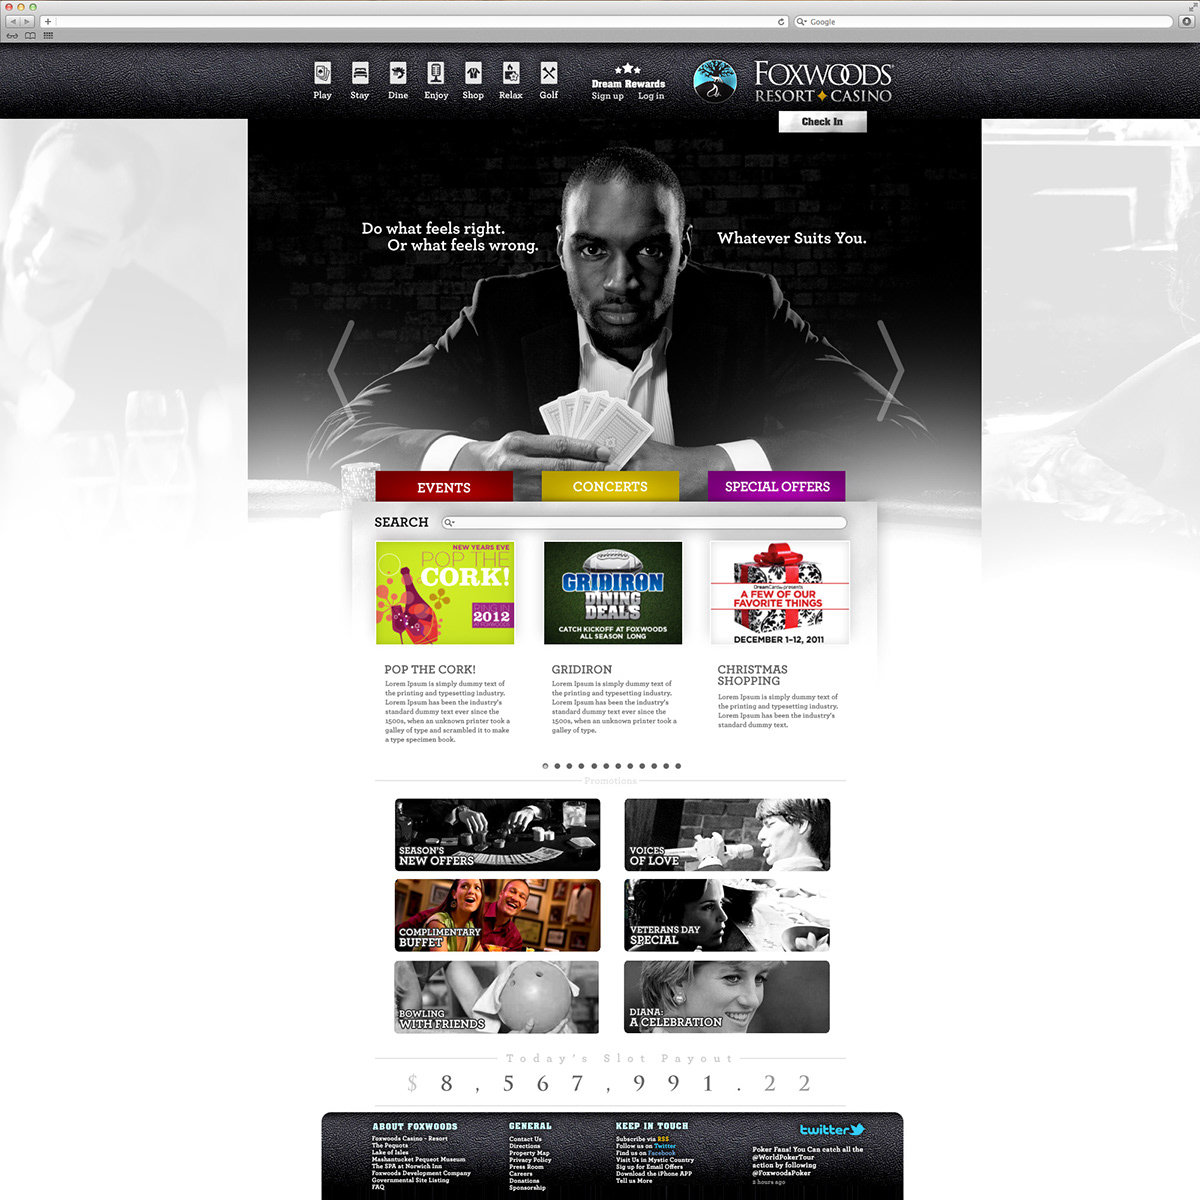 foxwoods casino website design uder interface